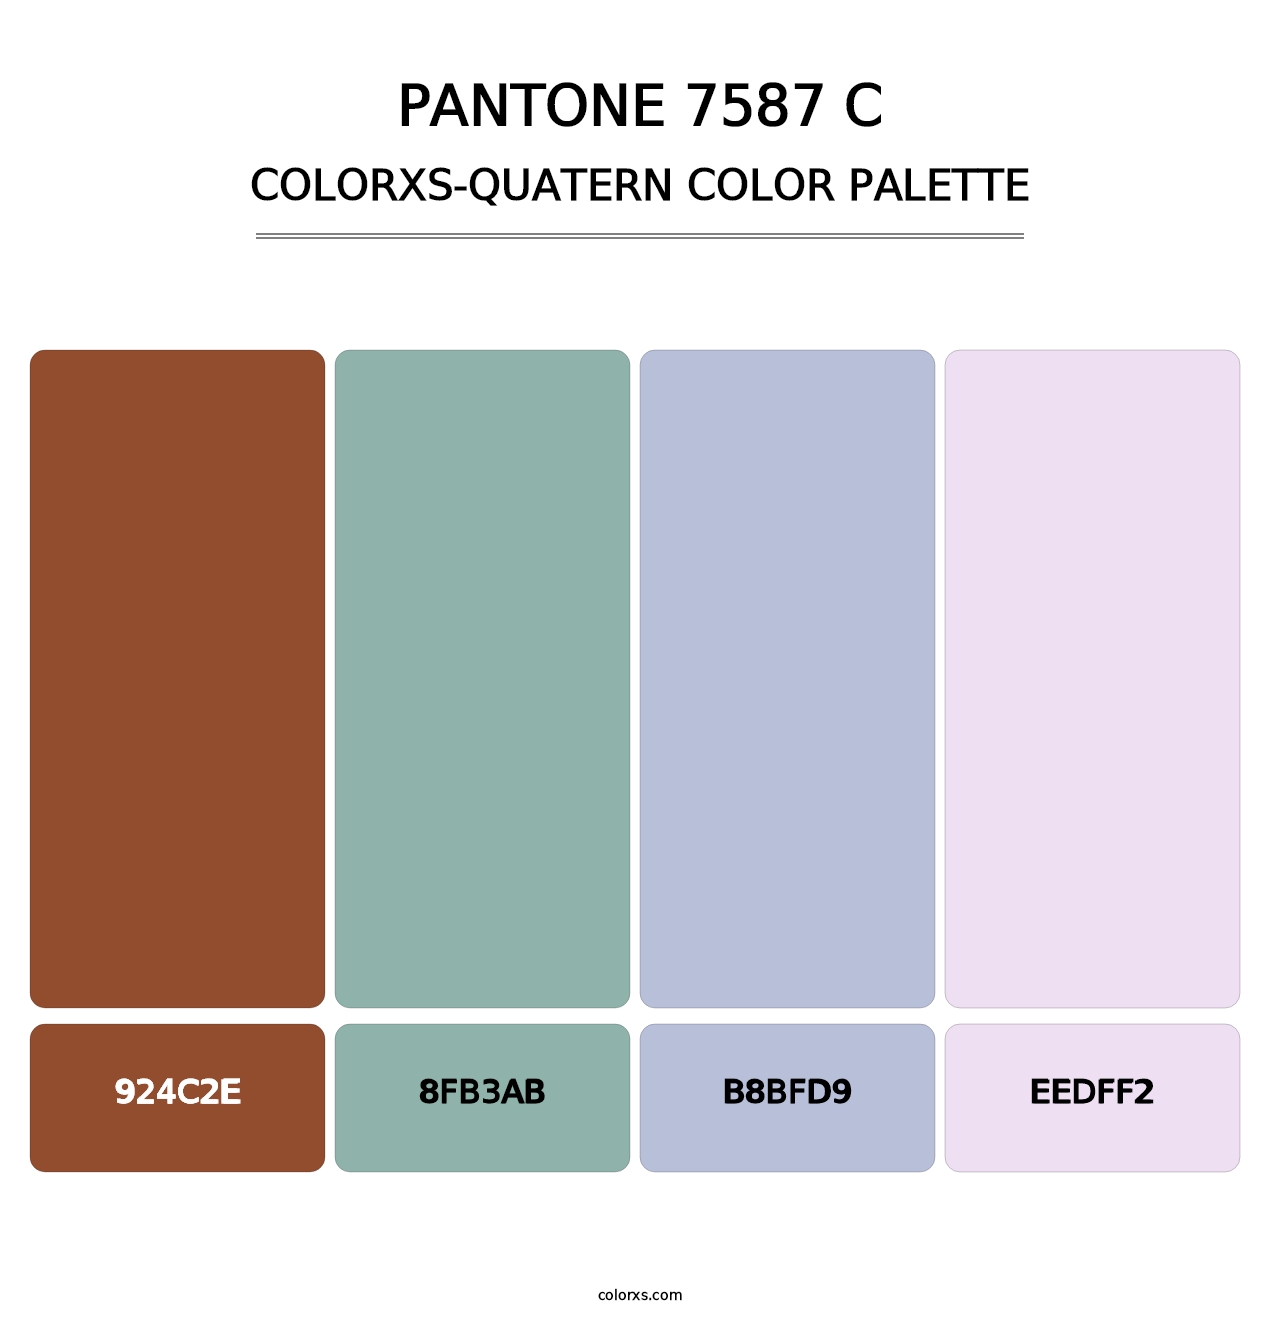 PANTONE 7587 C - Colorxs Quatern Palette